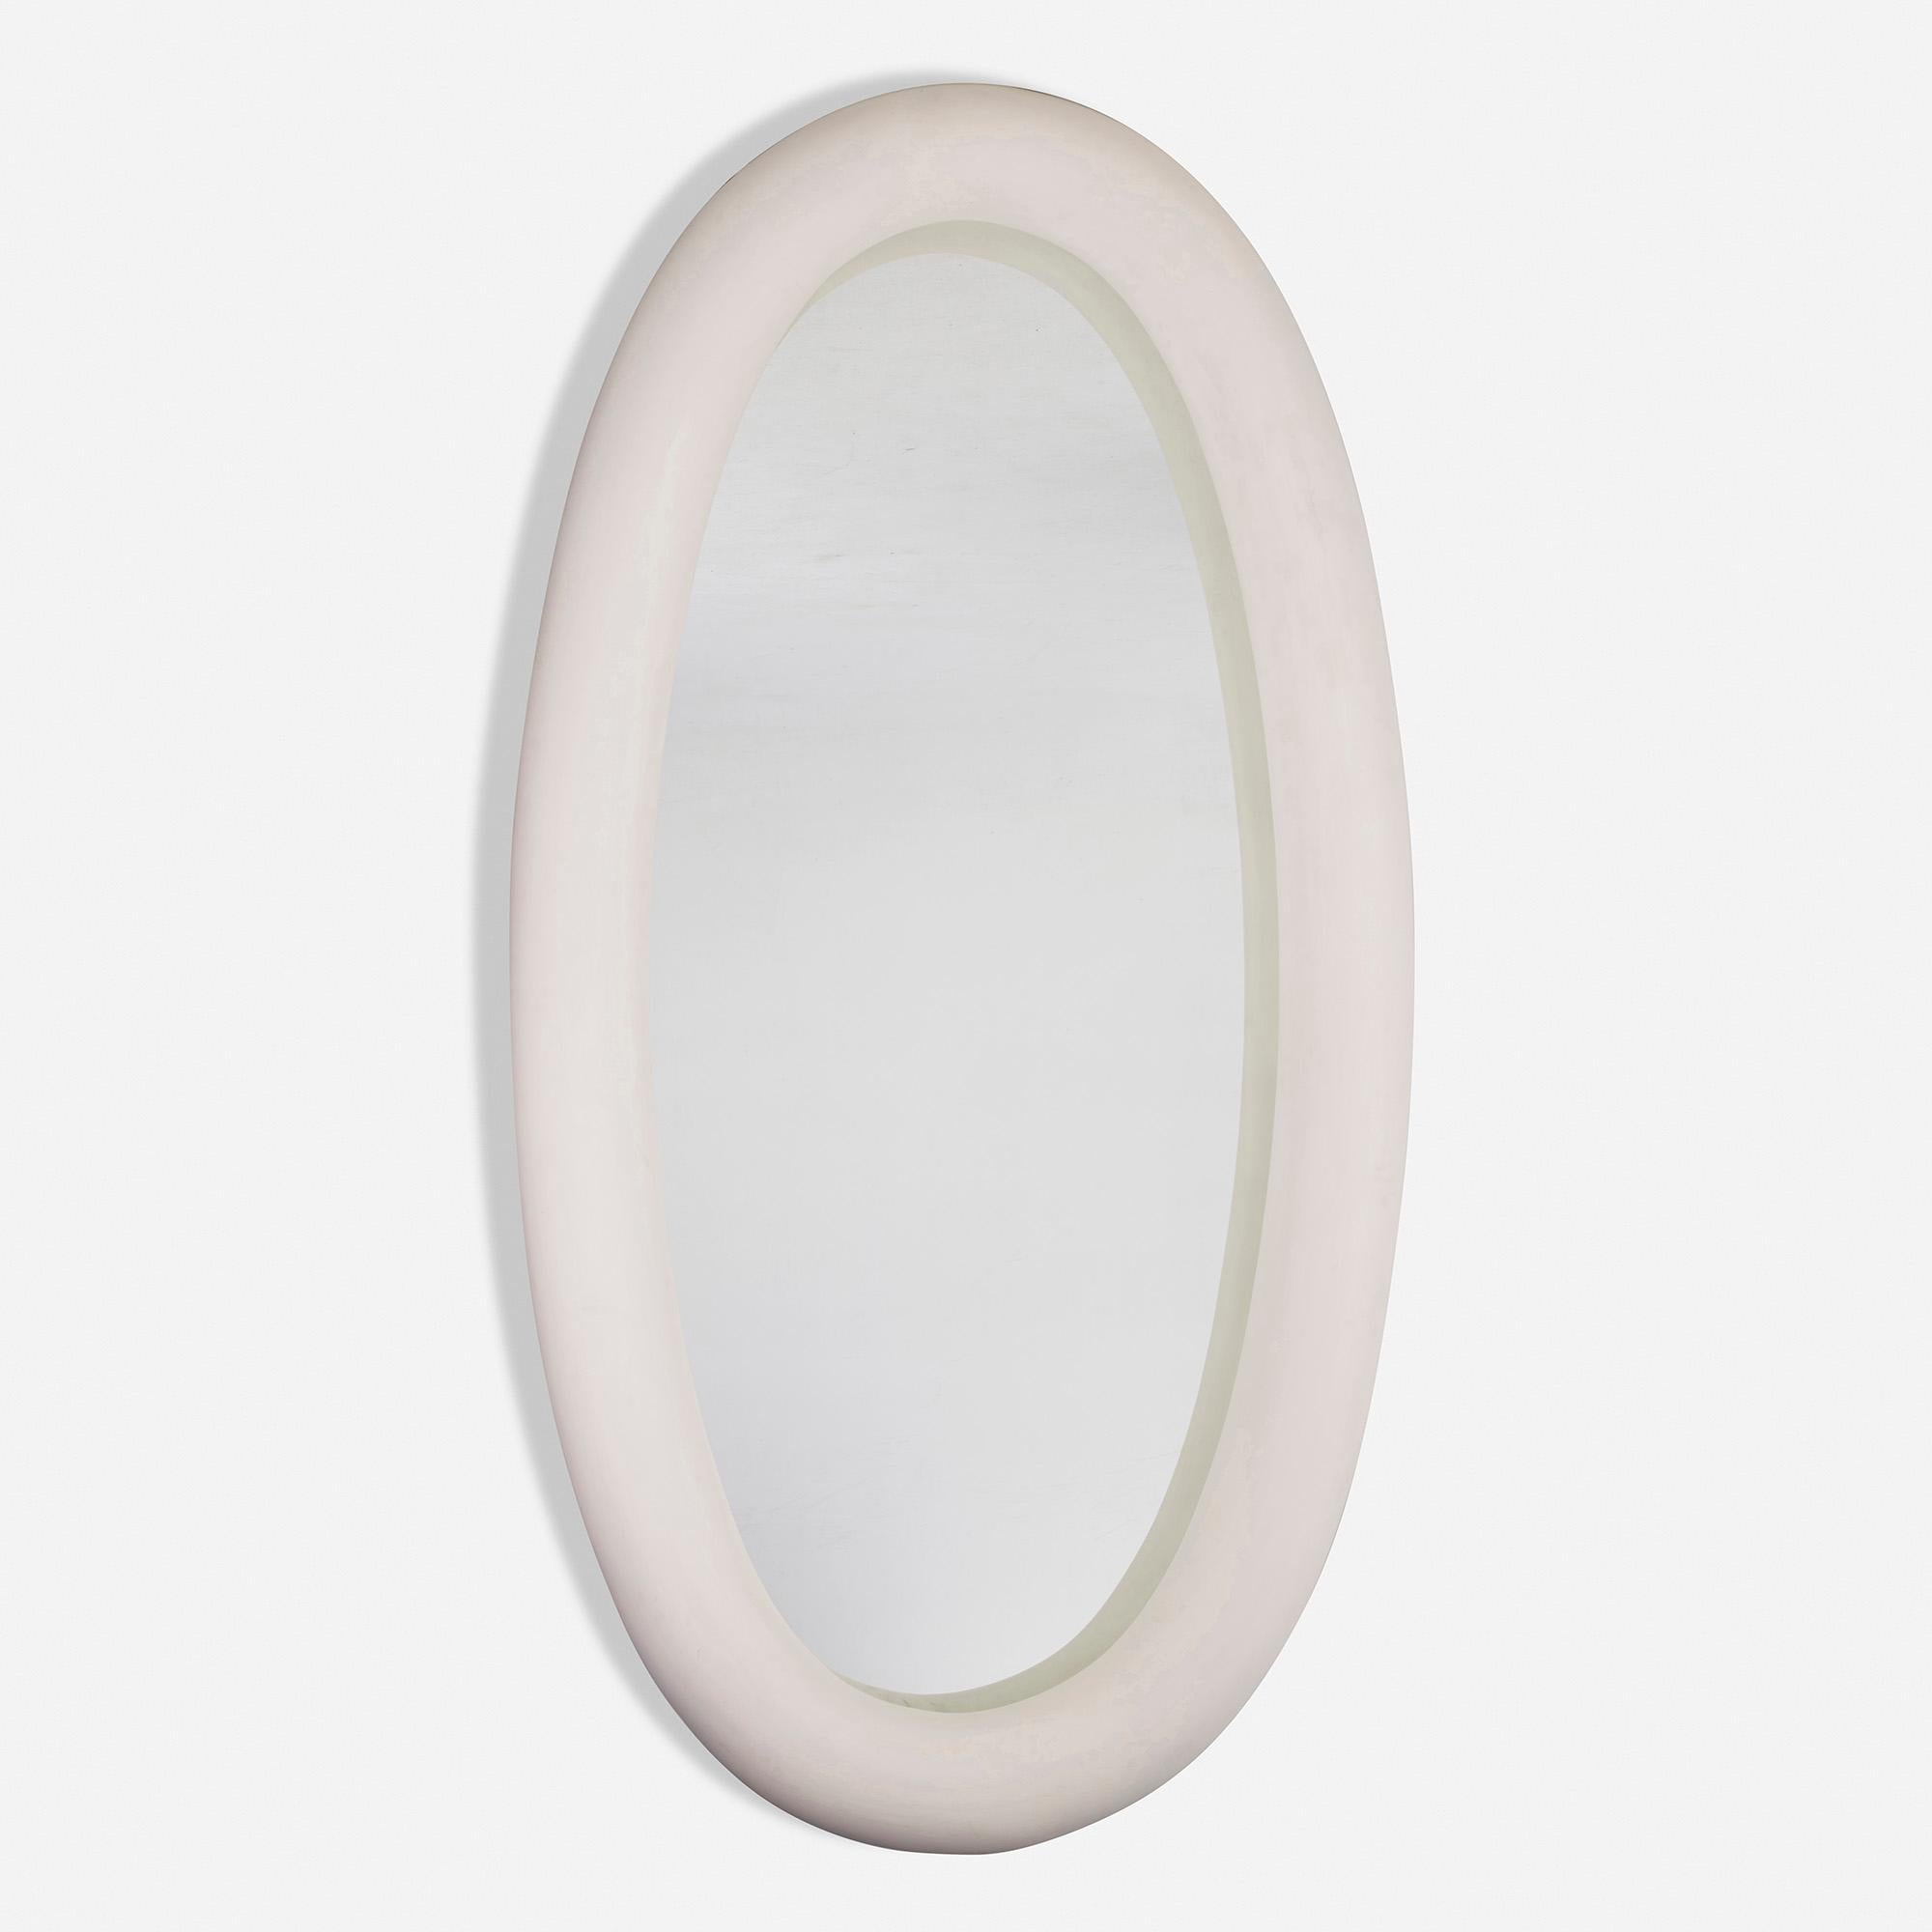 Provenance : Ce miroir personnalisé provient d'un intérieur conçu par Jacques Grange.

Fabriqué en : France, 1994-1996

Matériau : plâtre sur résine, verre miroir

Taille : 49.25 W × 7 D × 94.5 H in

Description : Marque en relief près de la